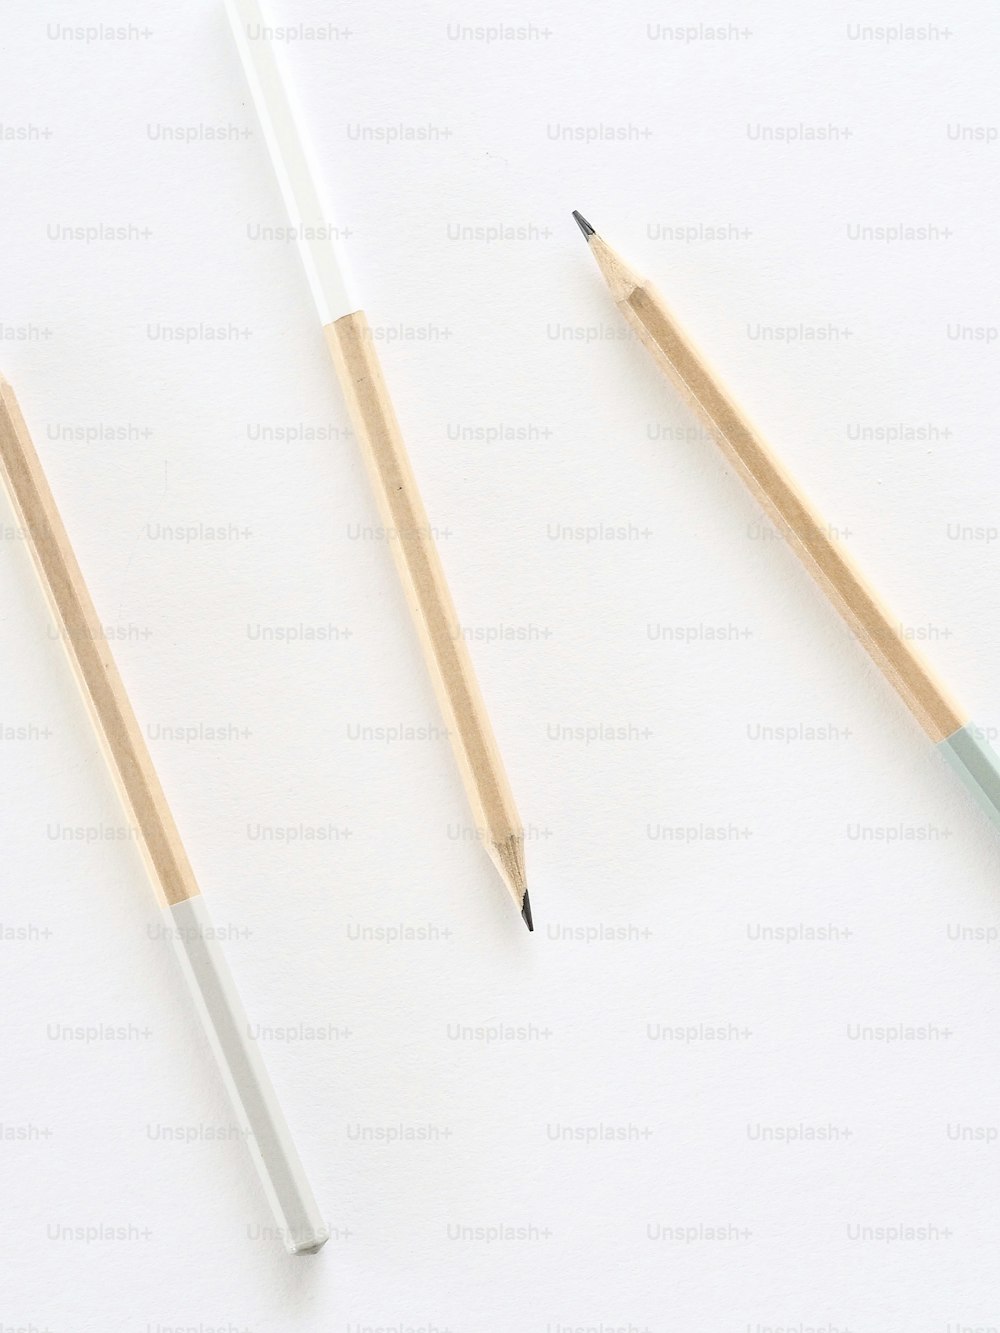 zwei Bleistifte und ein Bleistiftspitzer auf weißer Fläche